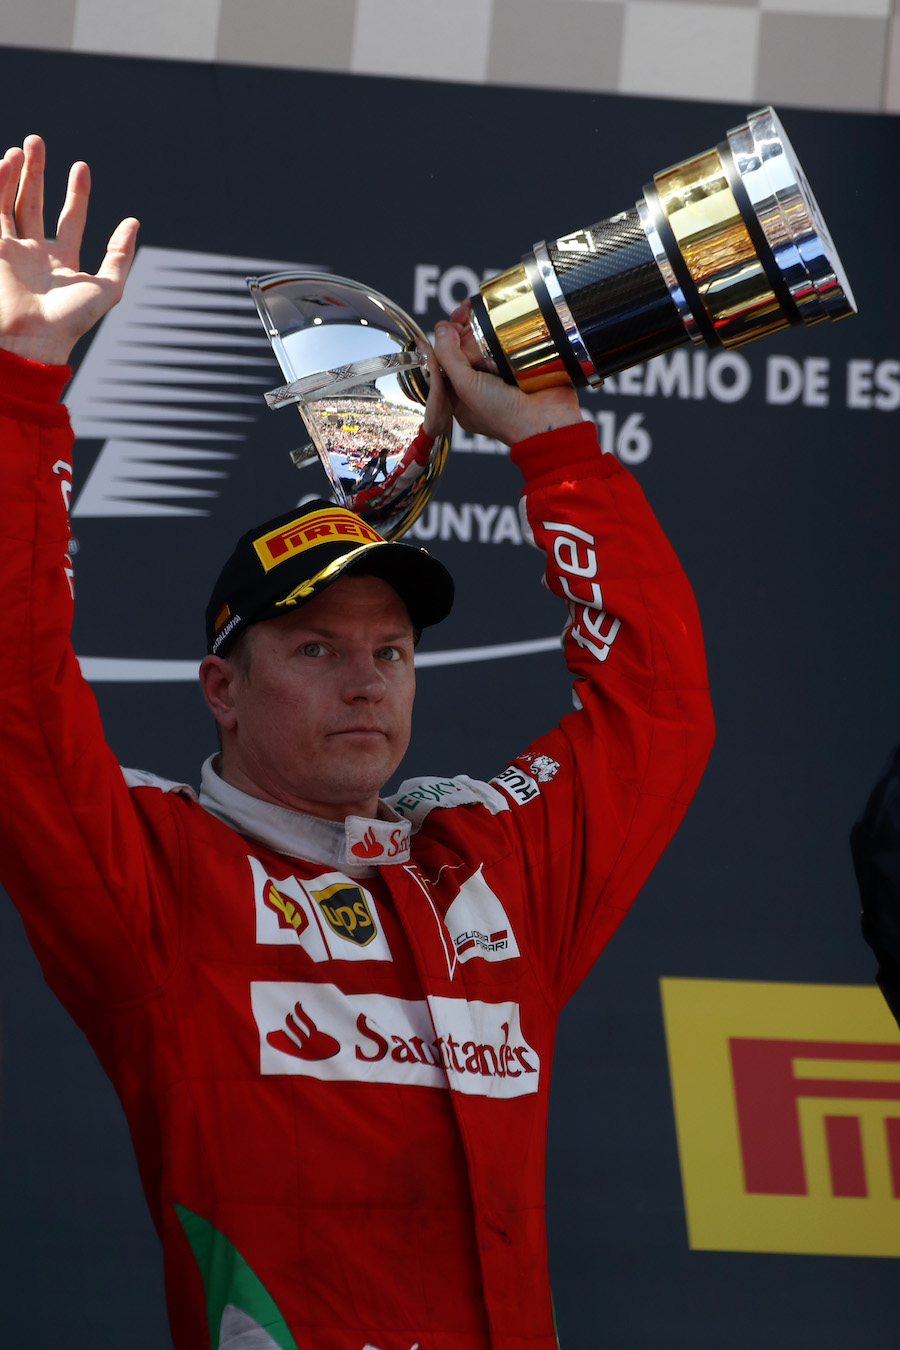 Kimi Raikkonen celebrates with the trophy on the podium